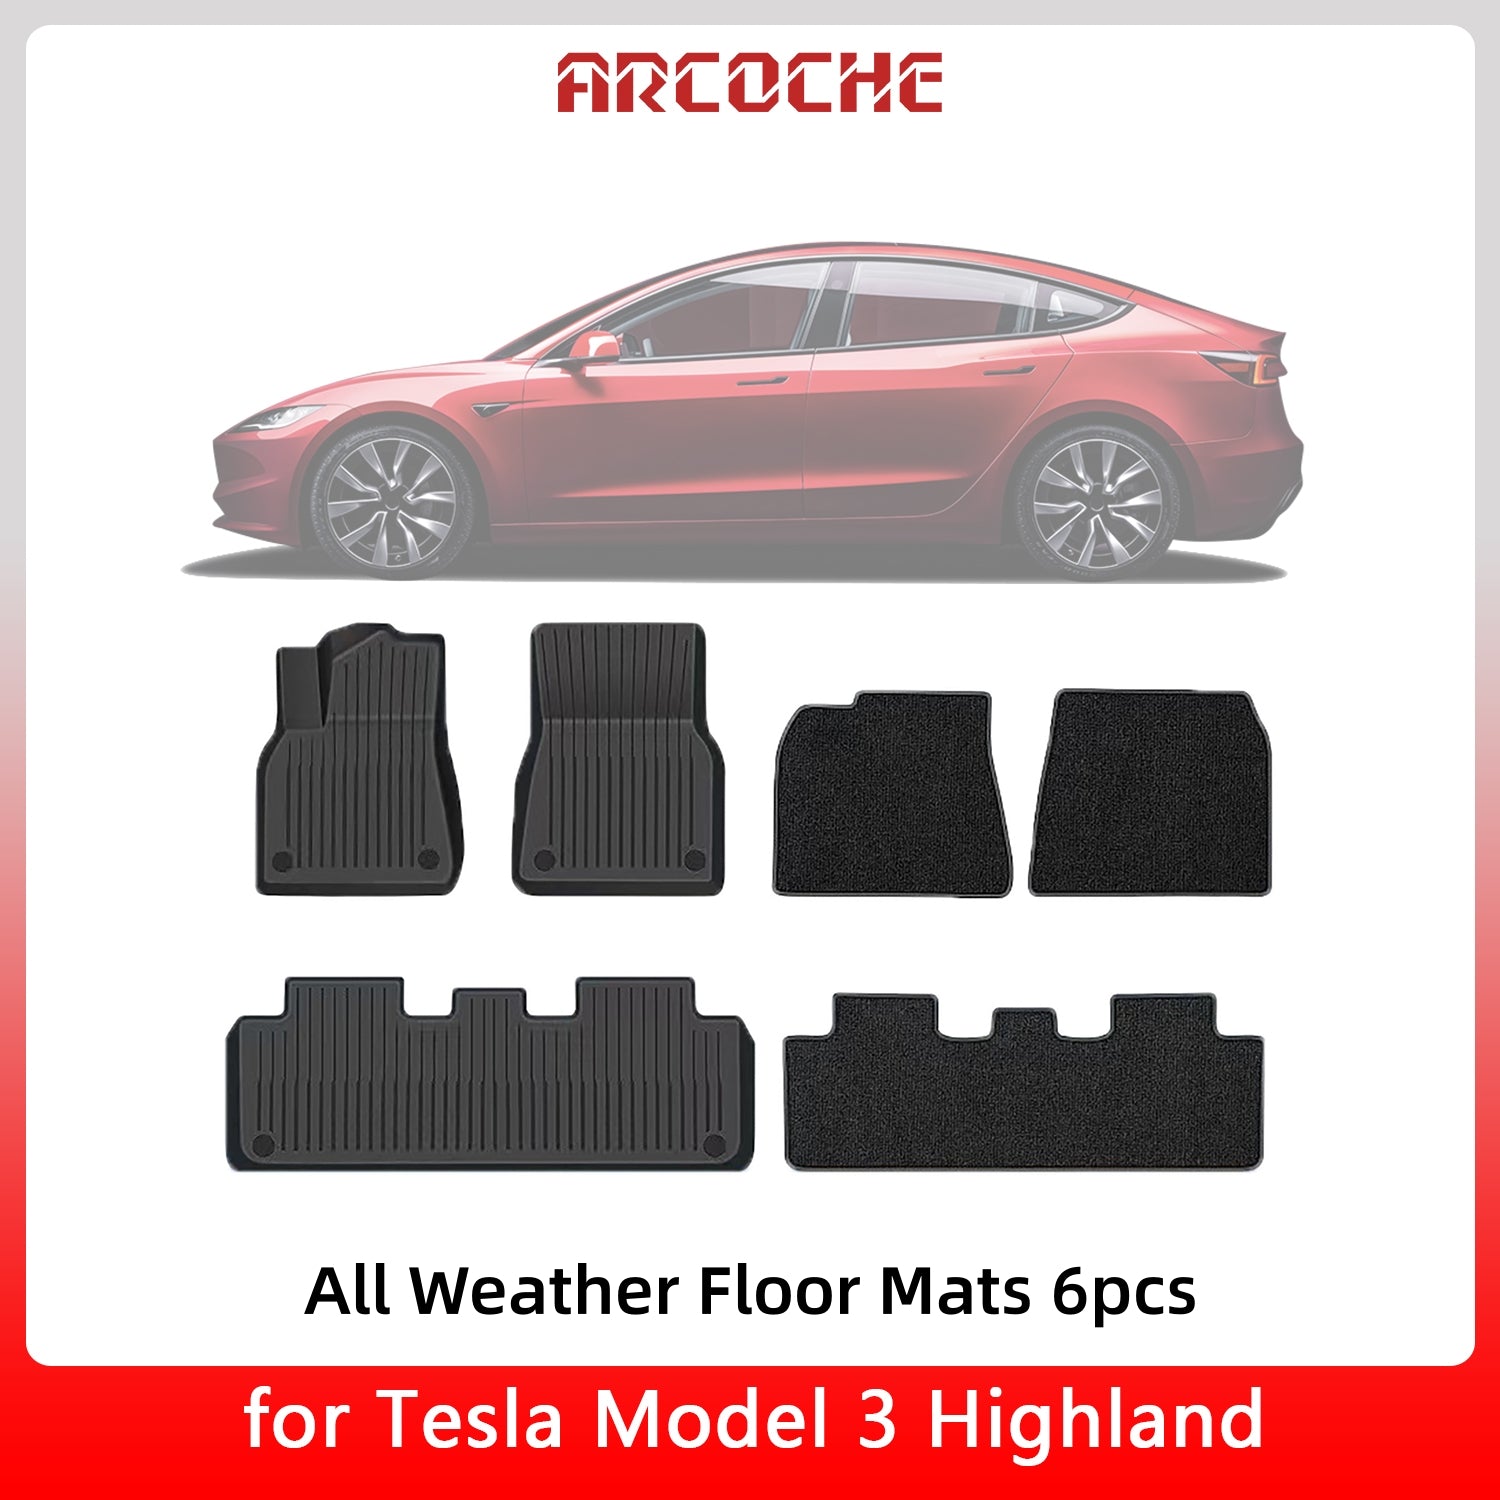 Notre sélection d'accessoires pour la Model 3 Highland